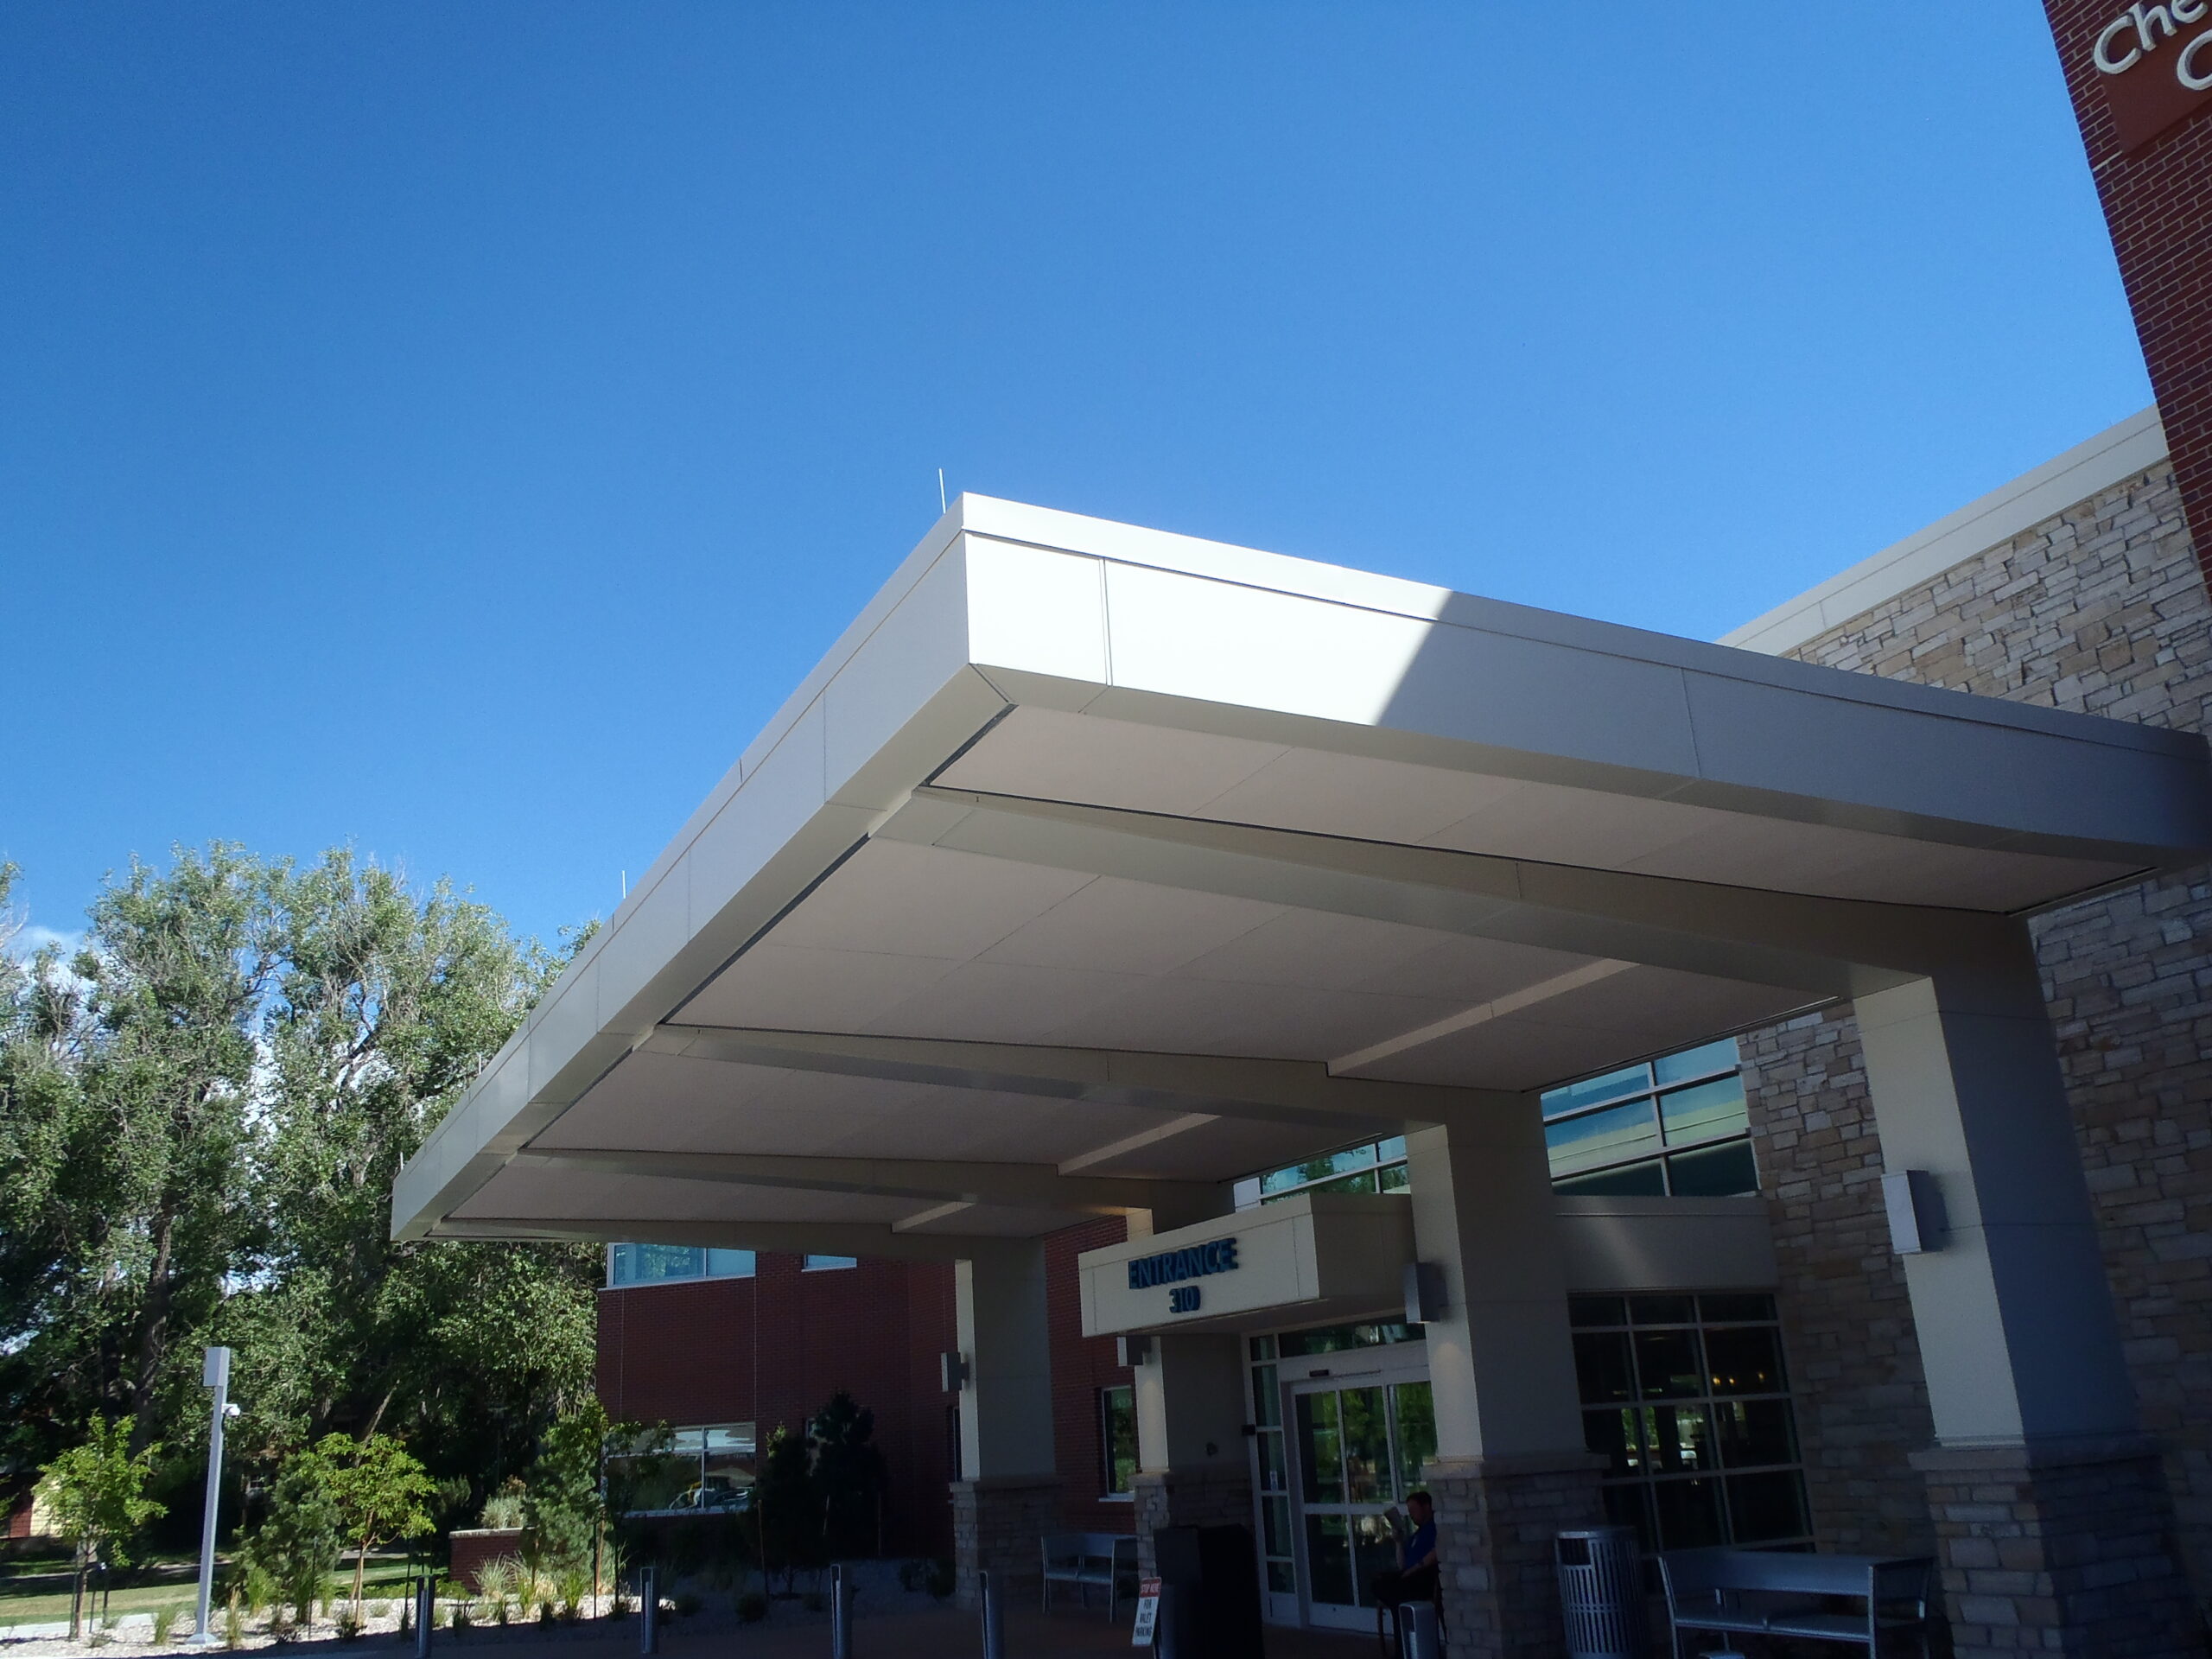 Cheyenne Regional Medical Center 27 scaled